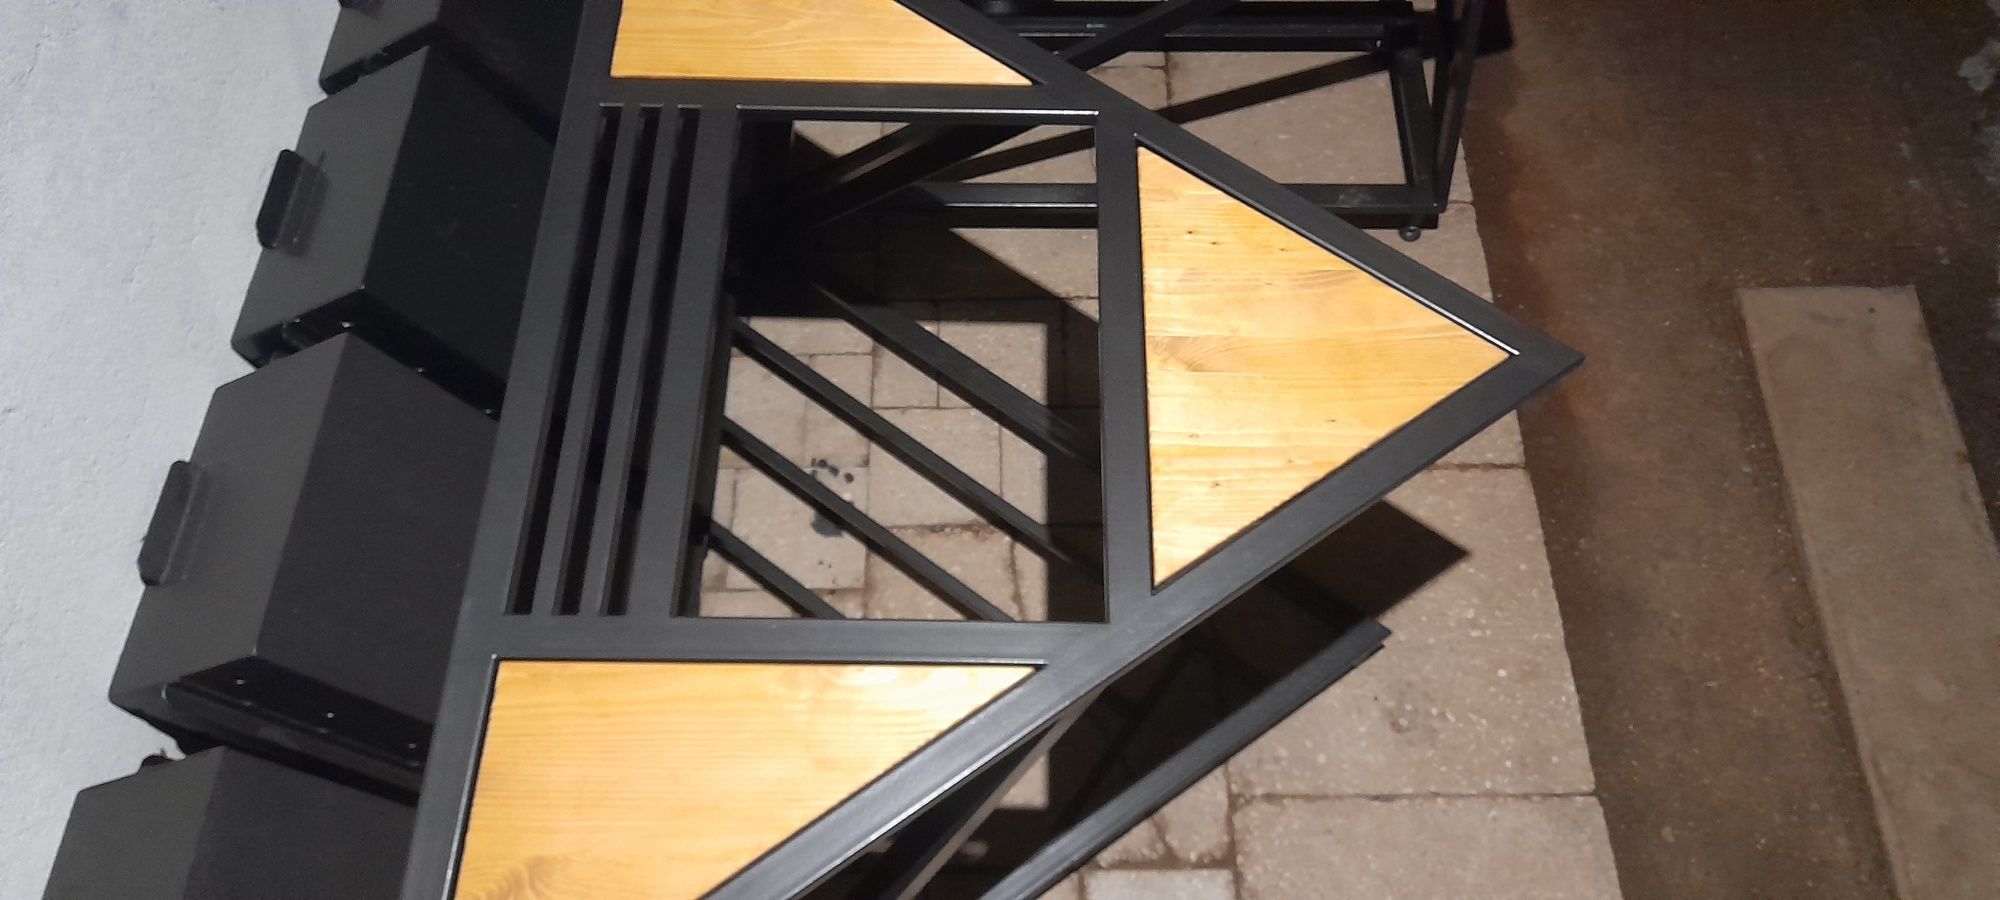 Вироби з металу в стилі лофт інсегреті мангали -- стільці -- столи --